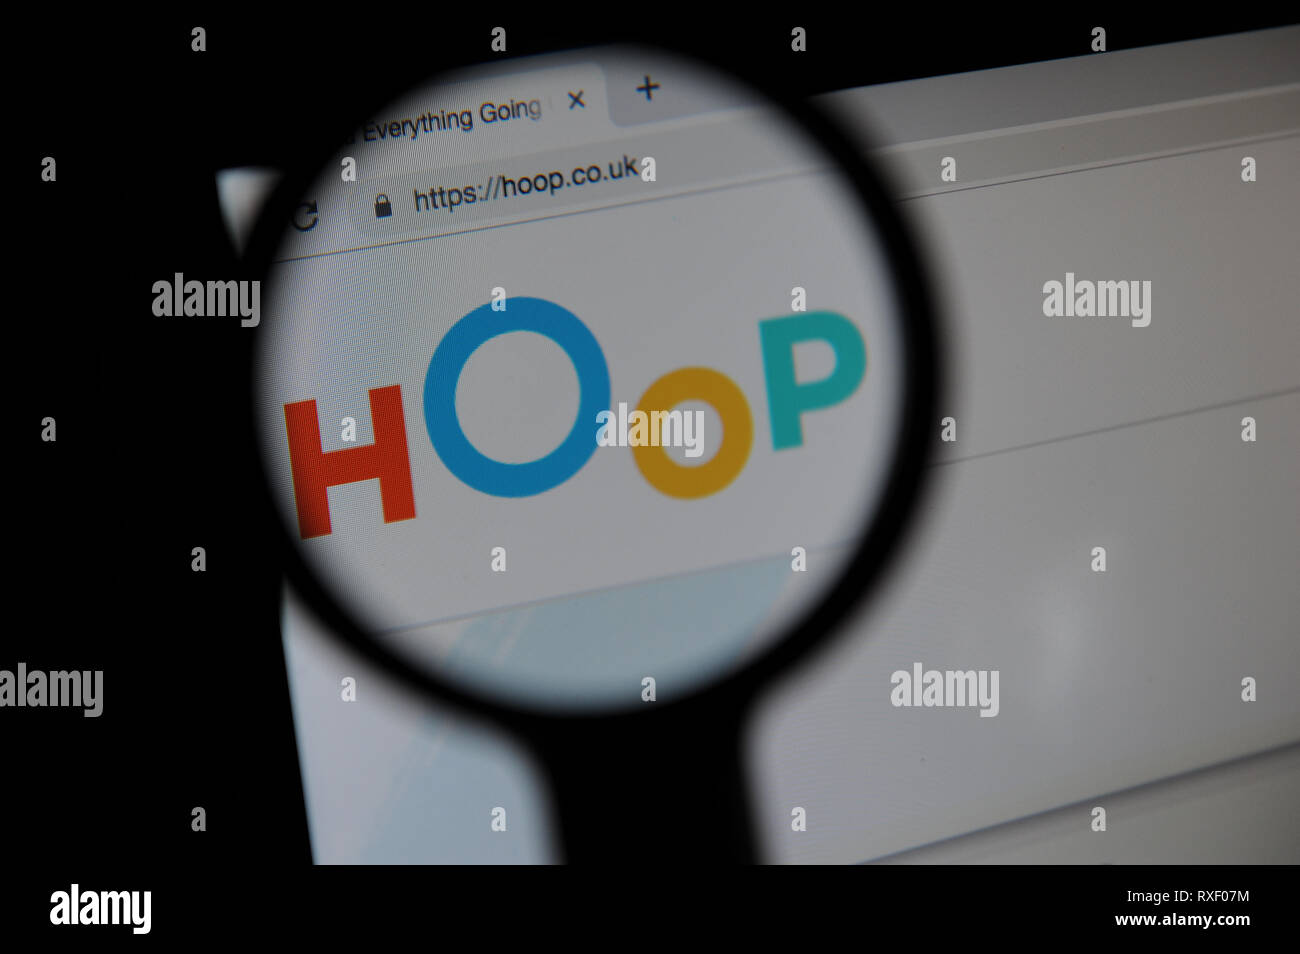 El sitio web de aro vistos a través de una lupa. Hoop es una aplicación en la que los padres pueden reservar actividades para niños. Foto de stock